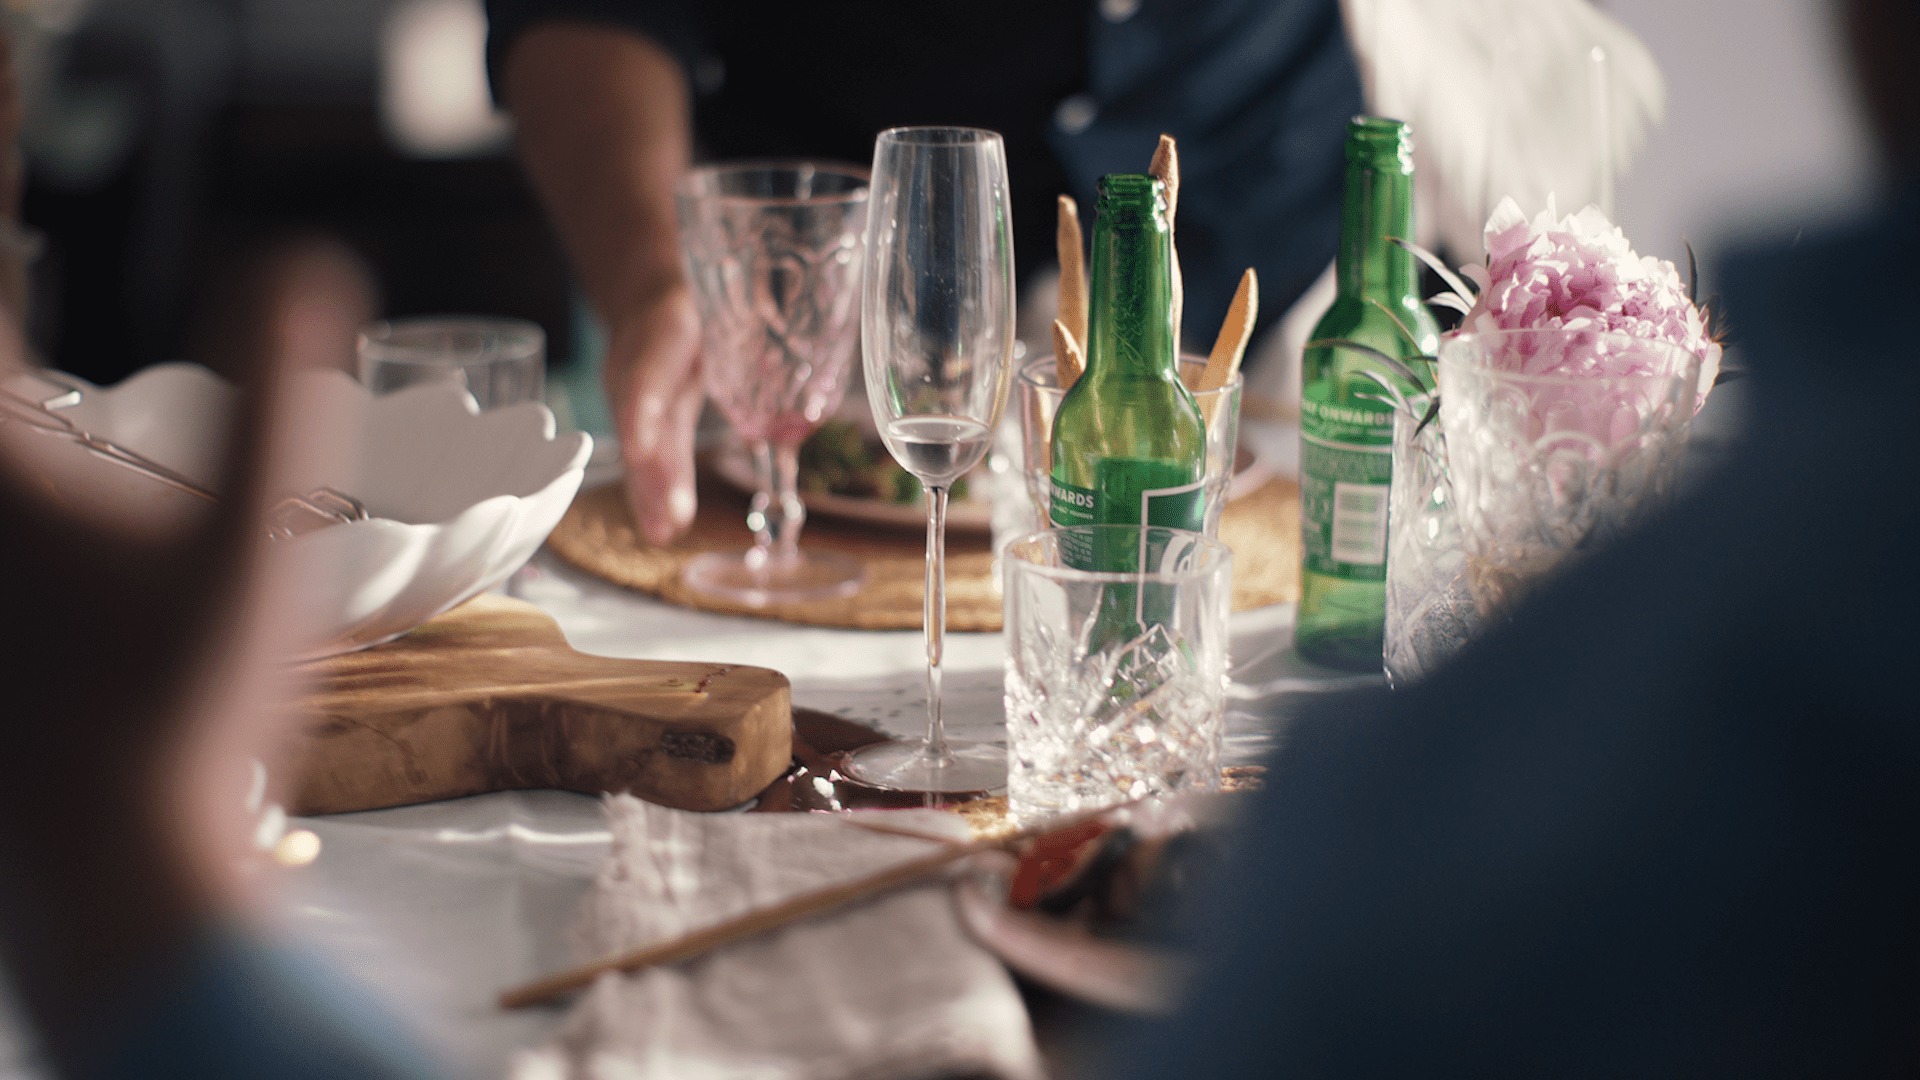 Et detaljbilde fra et middagsbord, med to tomme ølflasker og mange tomme glass